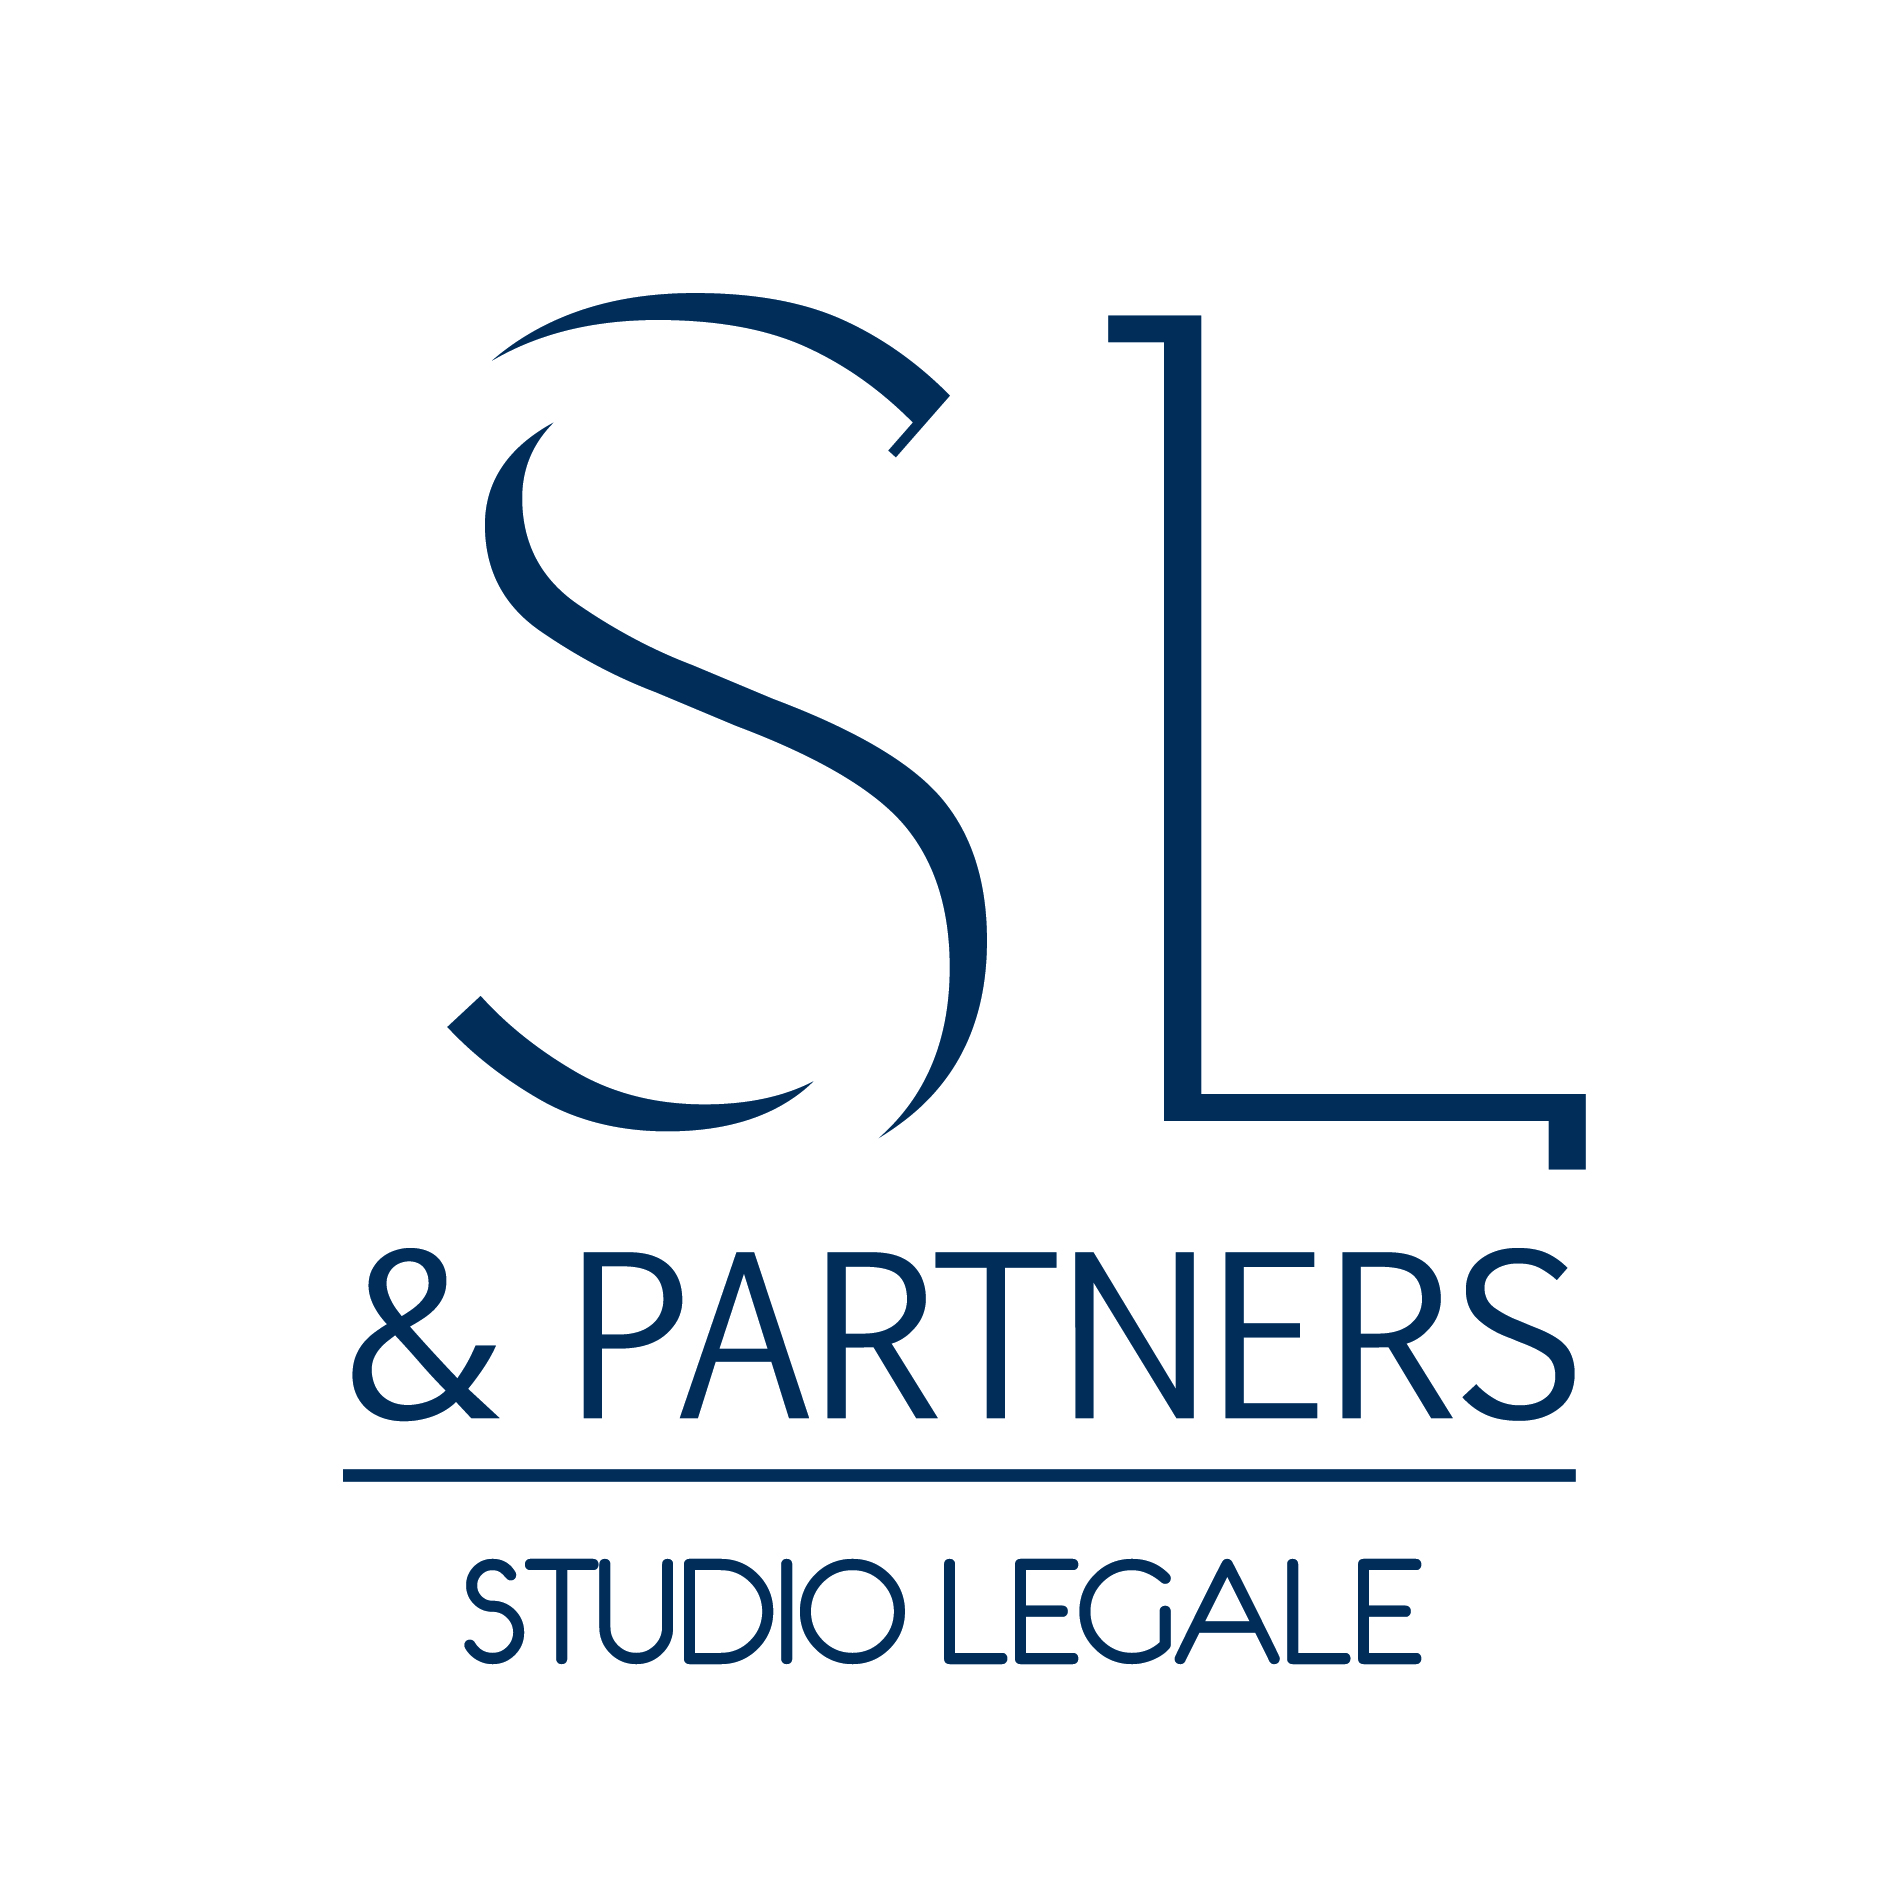 SL& Partners - Studio legale